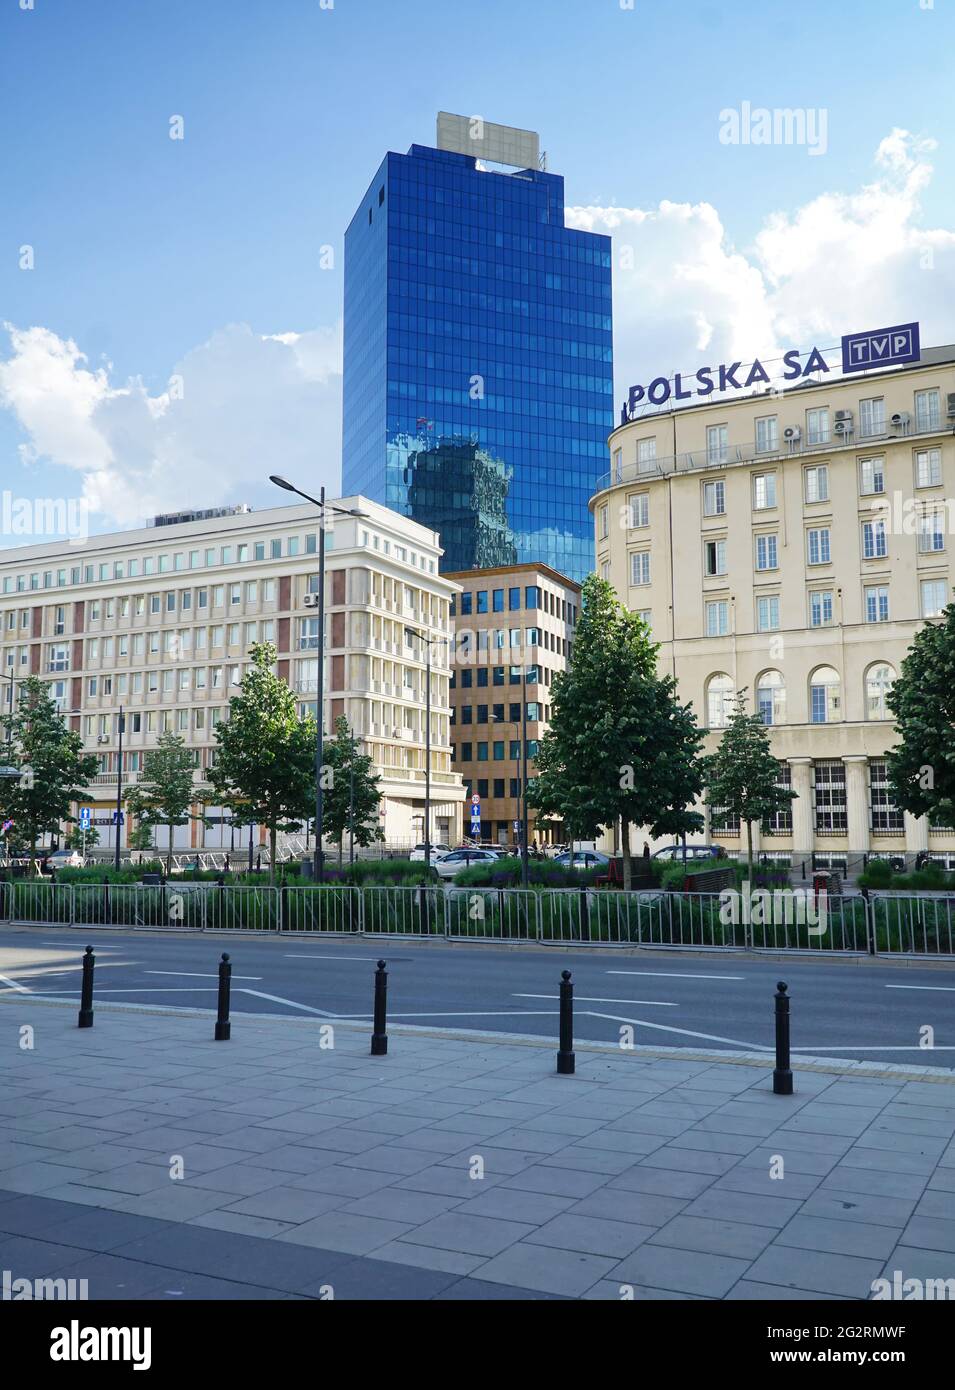 Zeitgenössische moderne Architektur zwischen Gebäuden im sozialistischen realistischen Stil in der Innenstadt von Warschau, Polen. Blick vom Plac Powstancow Warszawy. Stockfoto